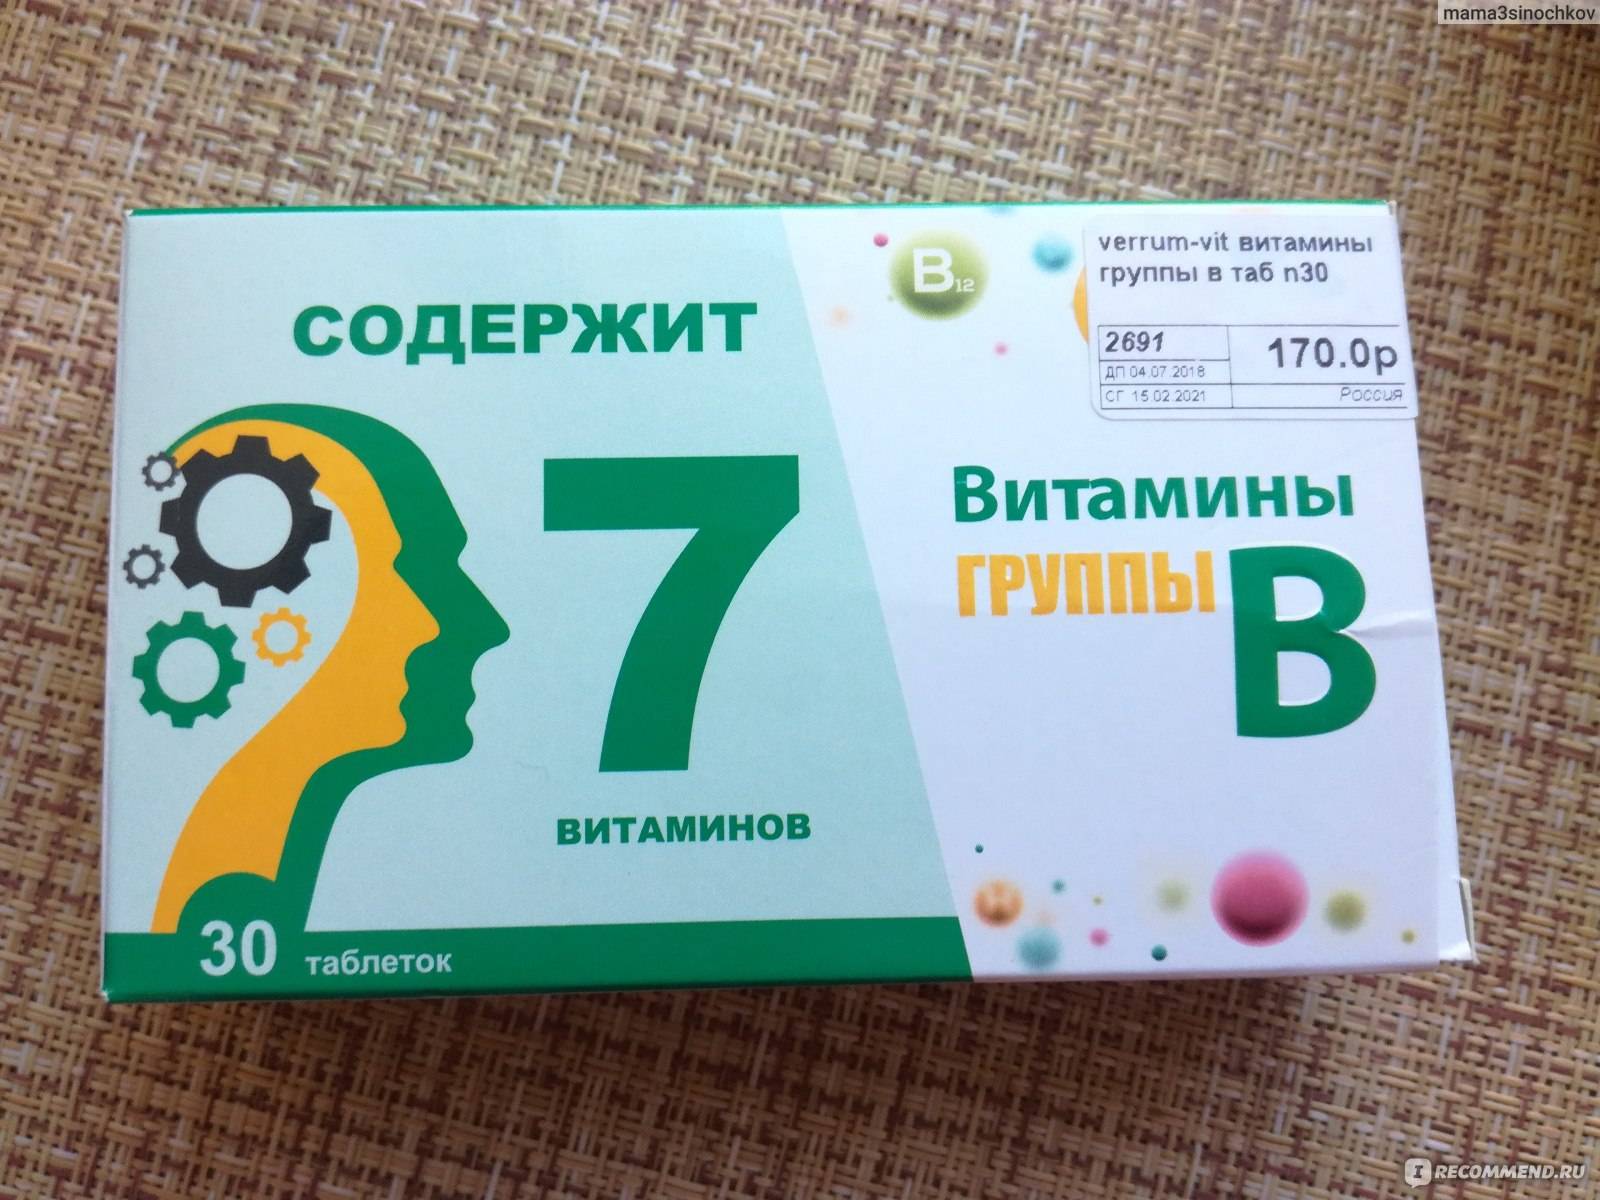 Б6 12. Витаминный комплекс в12 в6. Комплекс витаминов в2 в6 в12. Витаминный комплекс в6 в9 в12. Витамины б1 б6 б12 в таблетках.